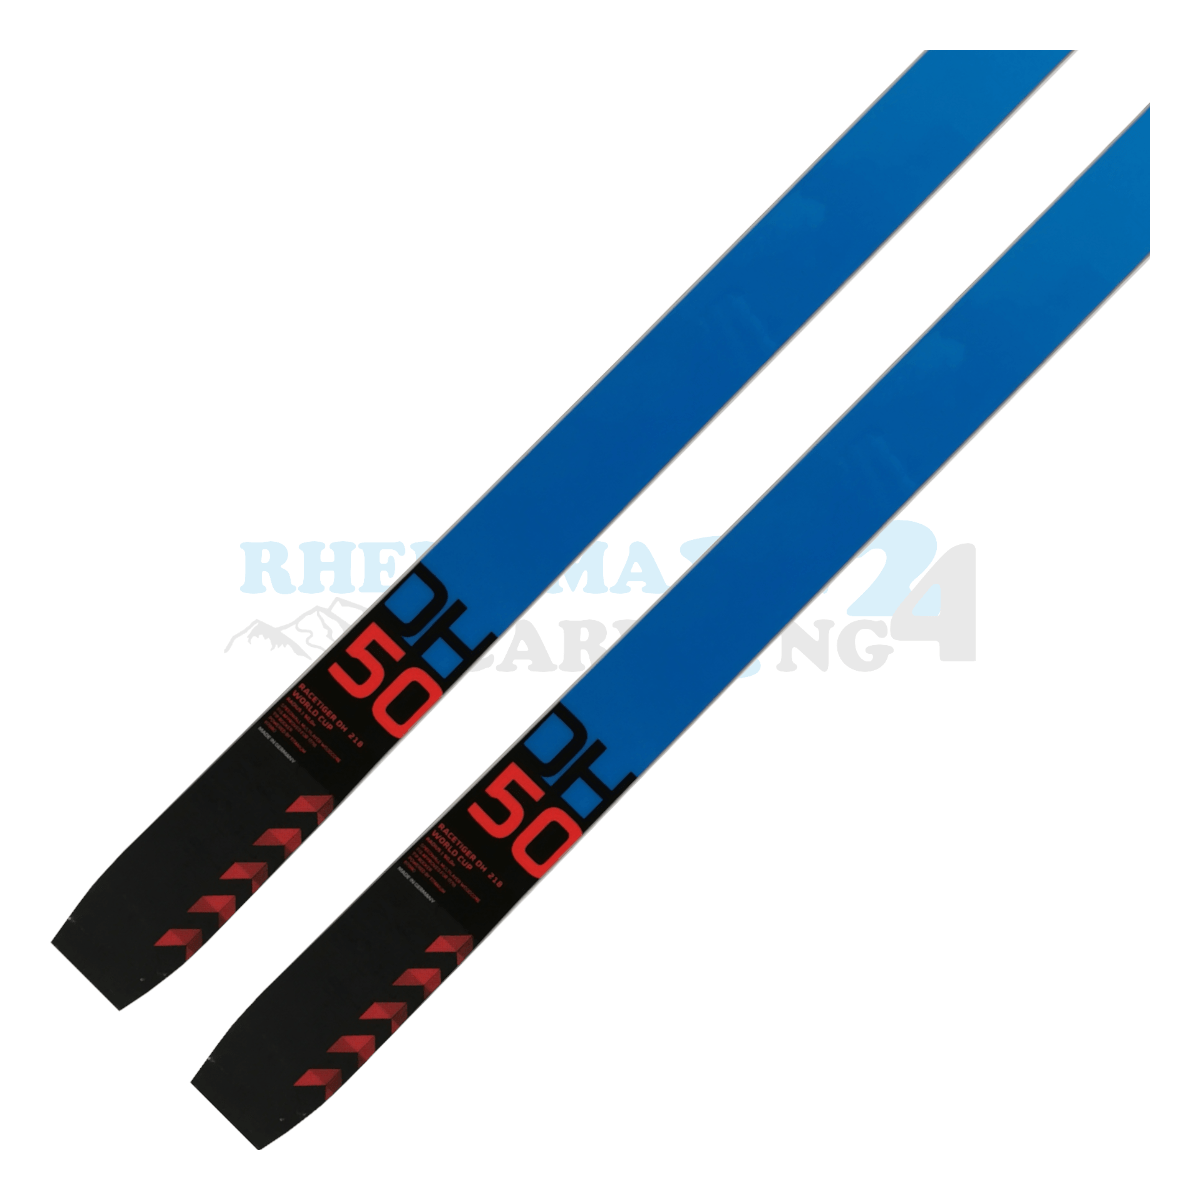 Völkl Racetiger DownHill Ski in den Farben blau-rot, Ansicht des unteren Teils des Skis 